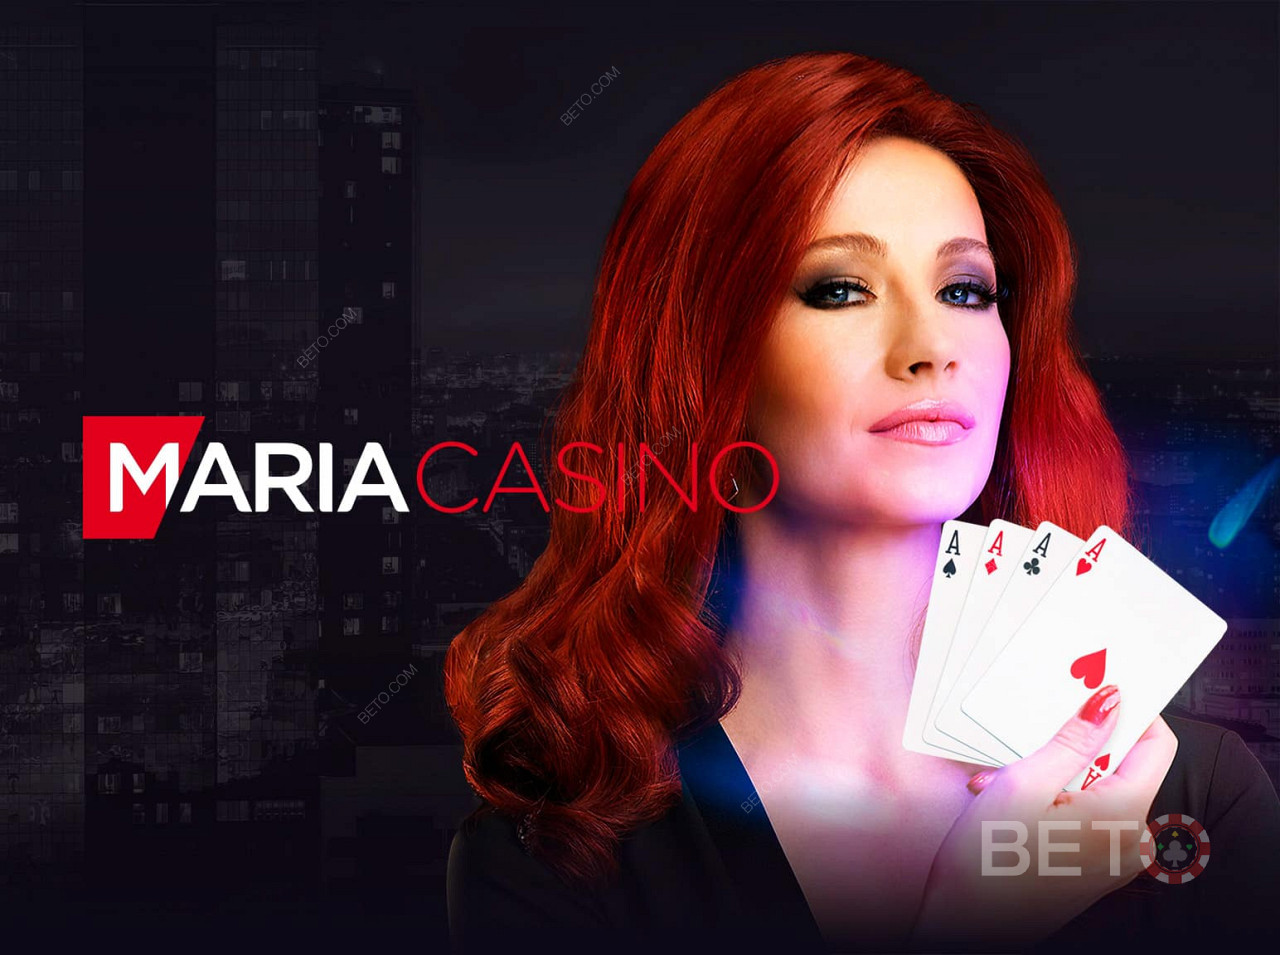 Programme VIP et bonus pour vous en tant que client de Maria casino